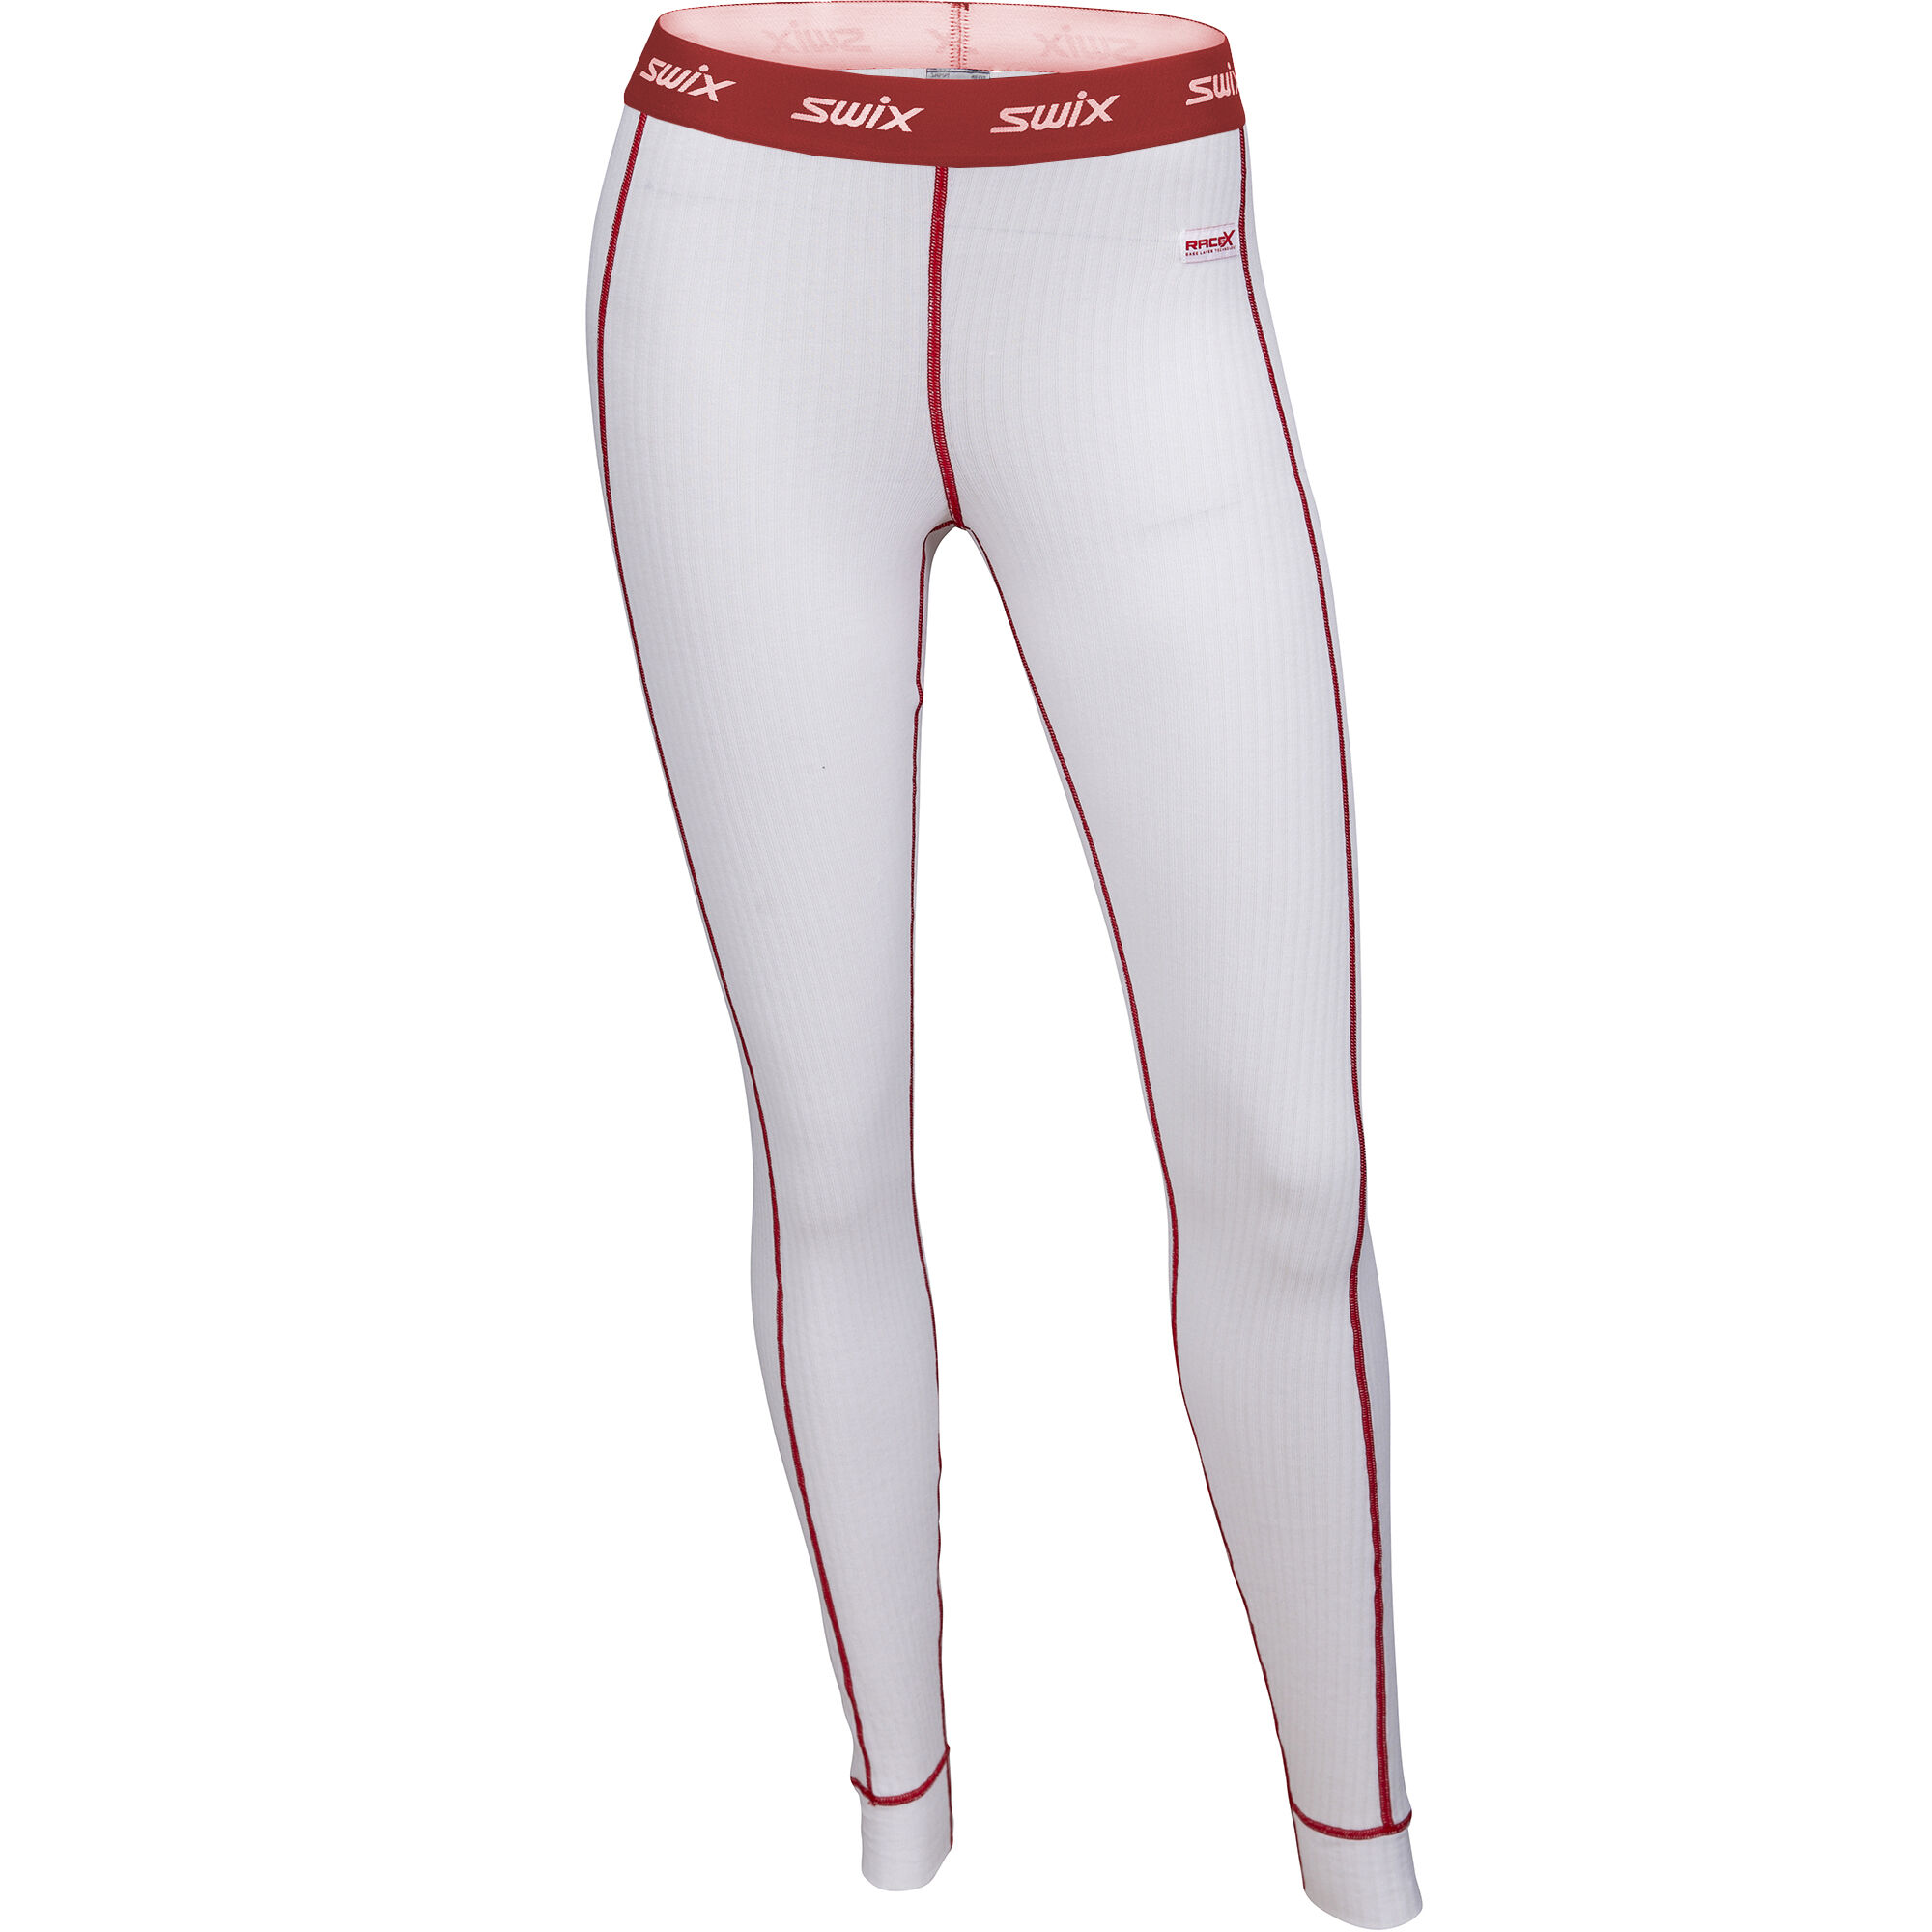 Women’s RaceX Bodywear Pants Bright white